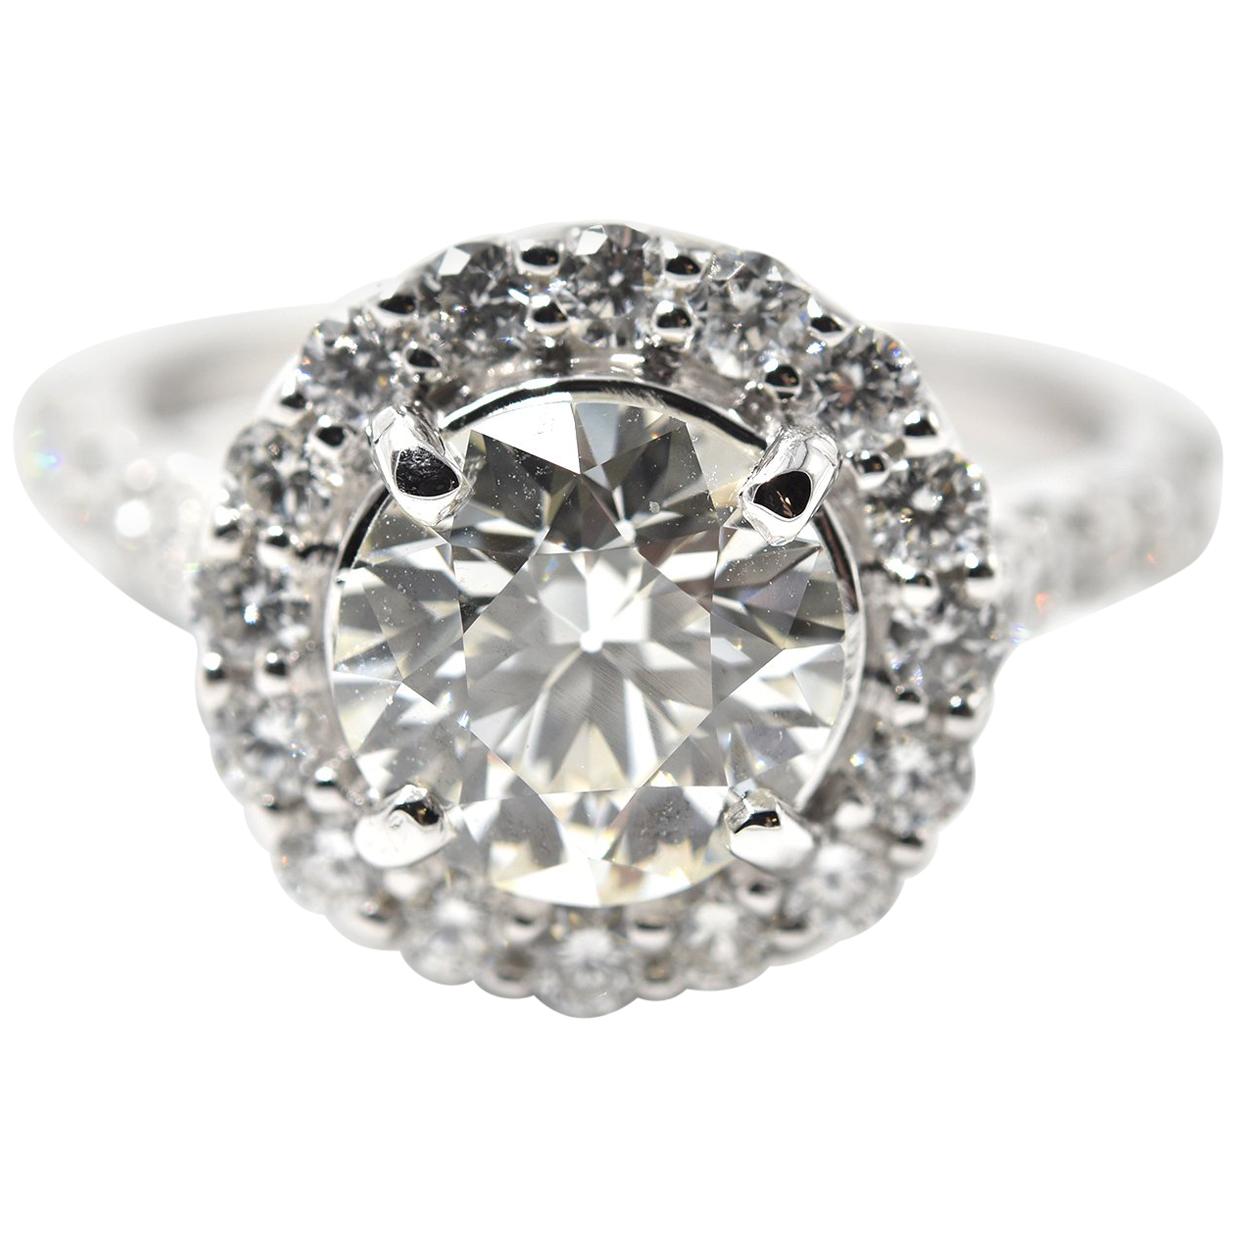 2.01 Carat Diamond 18 Karat White Gold Engagement Ring